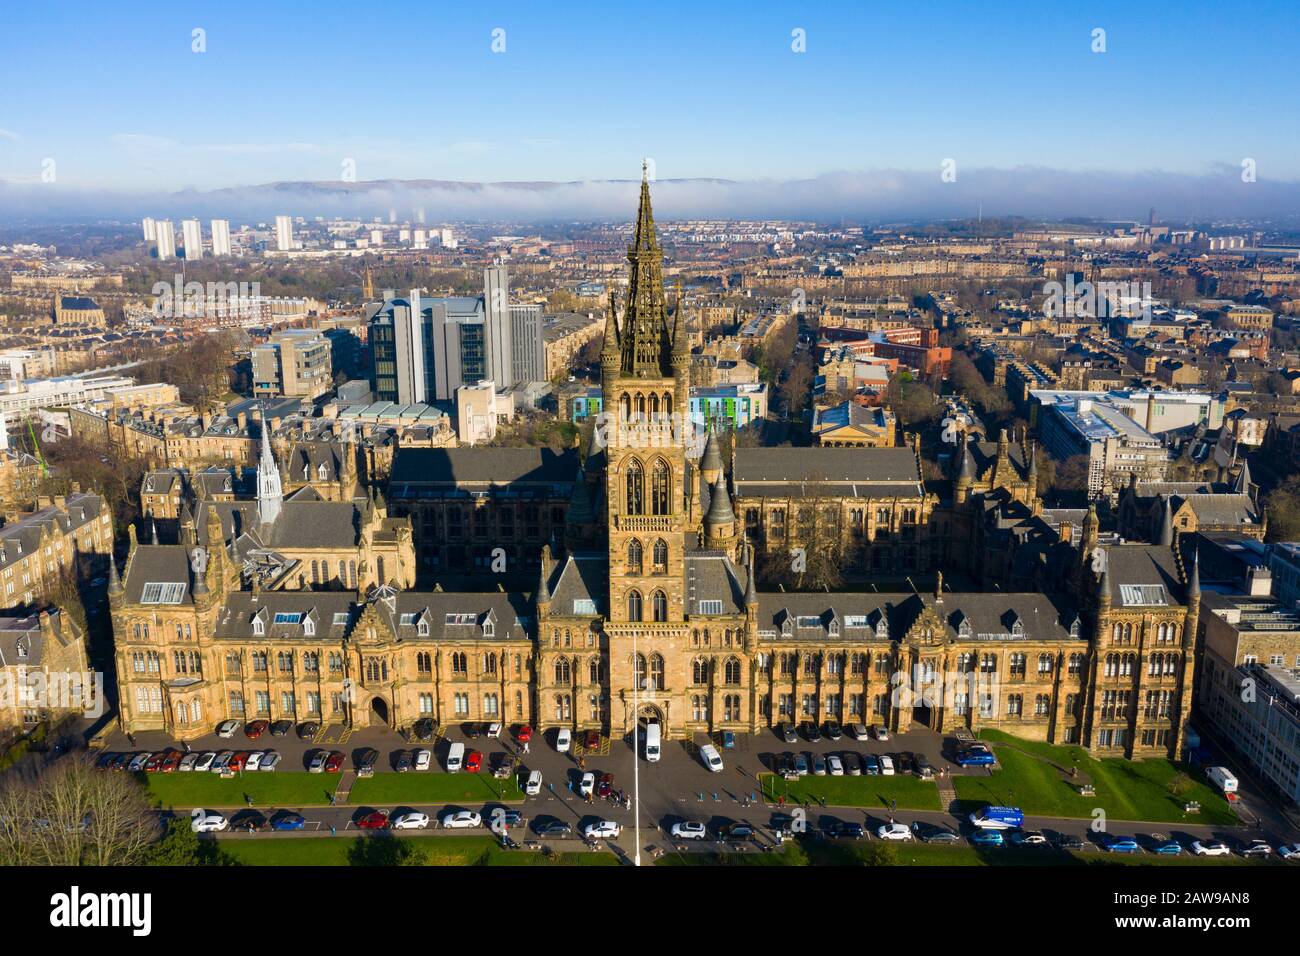 Vue aérienne des bâtiments gothiques de l'Université de Glasgow, Ecosse, Royaume-Uni Banque D'Images